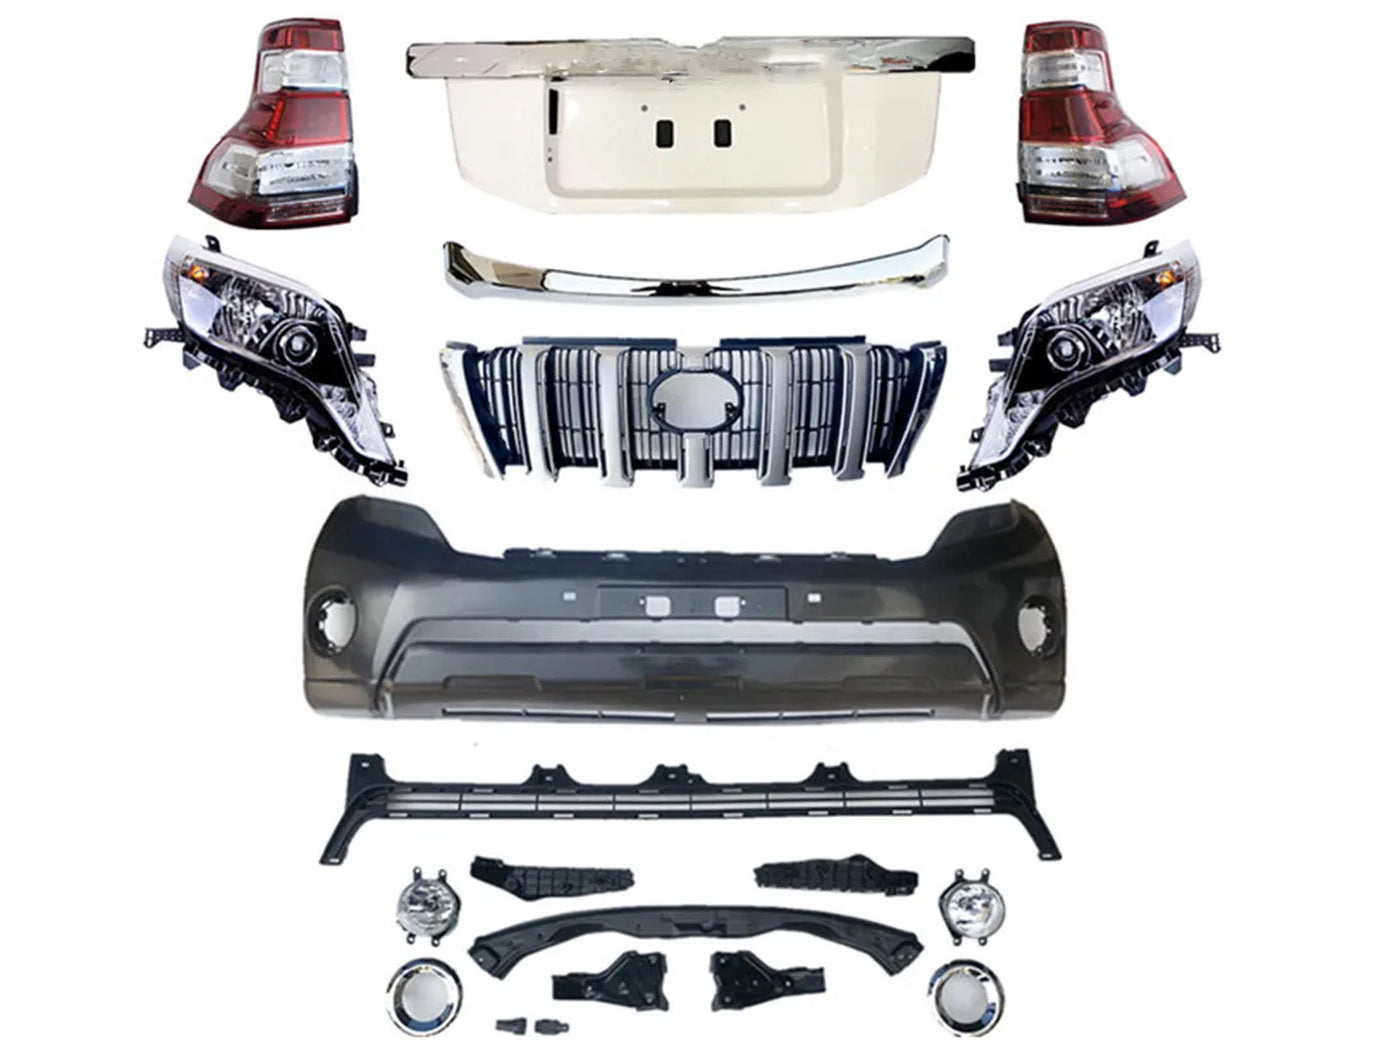 Body Kit de Conversión para Toyota Prado 2010-2013 a 2017 Vx